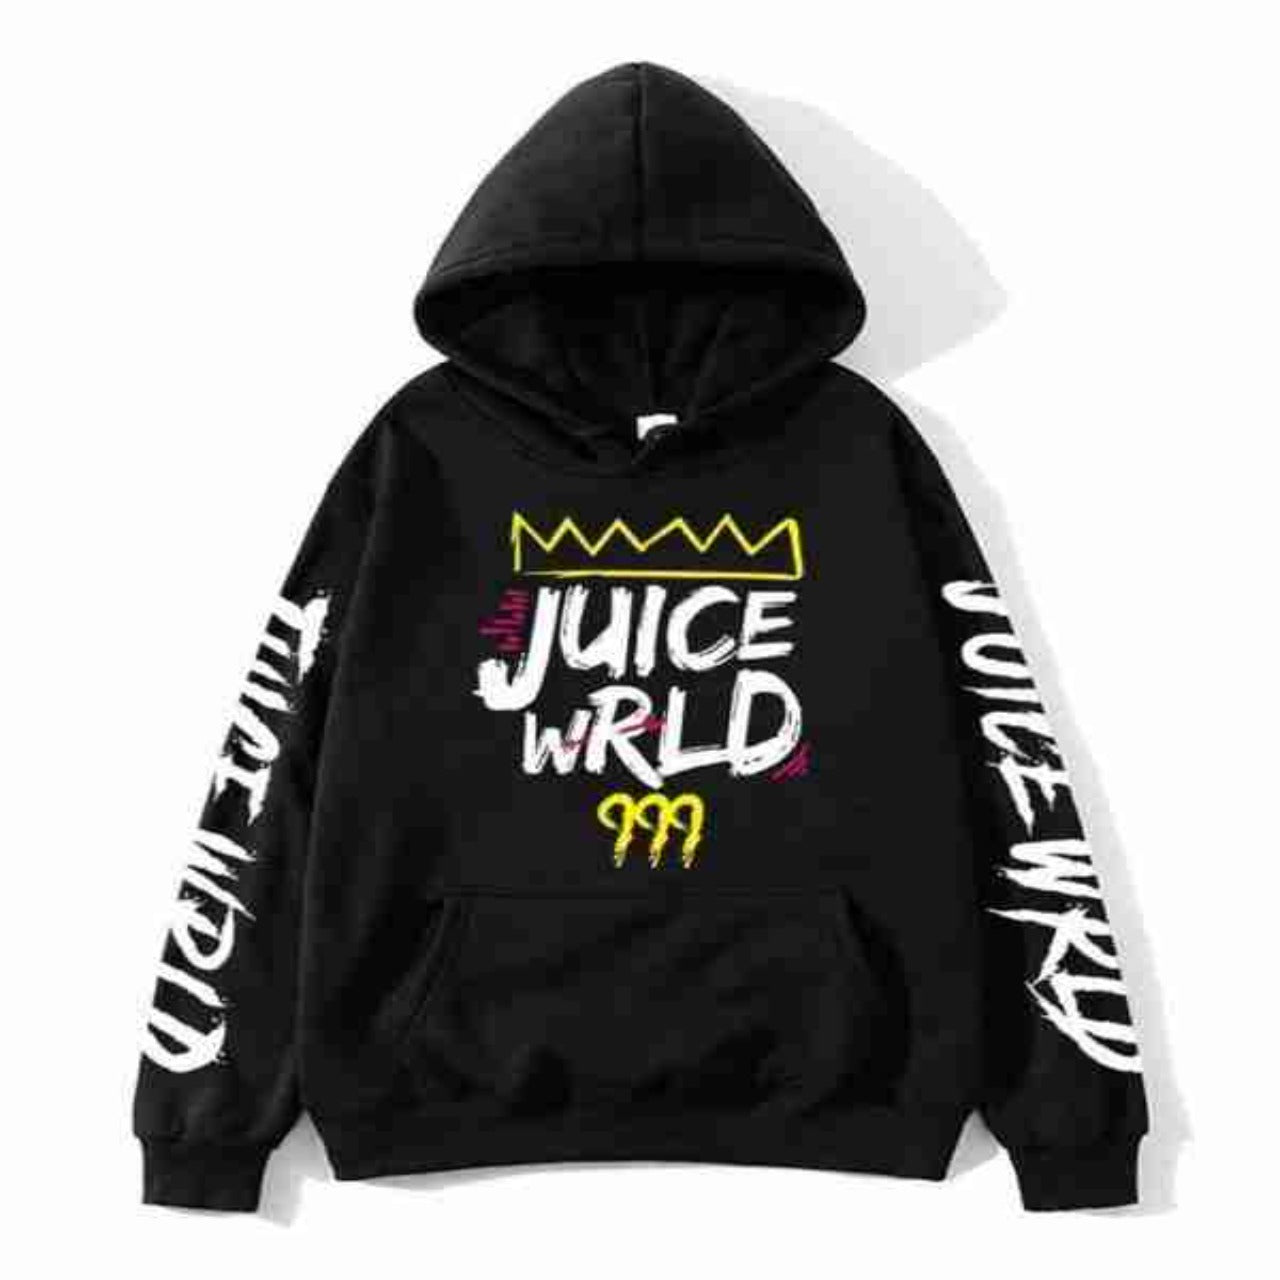 Juice WRLD 999 Hoodie